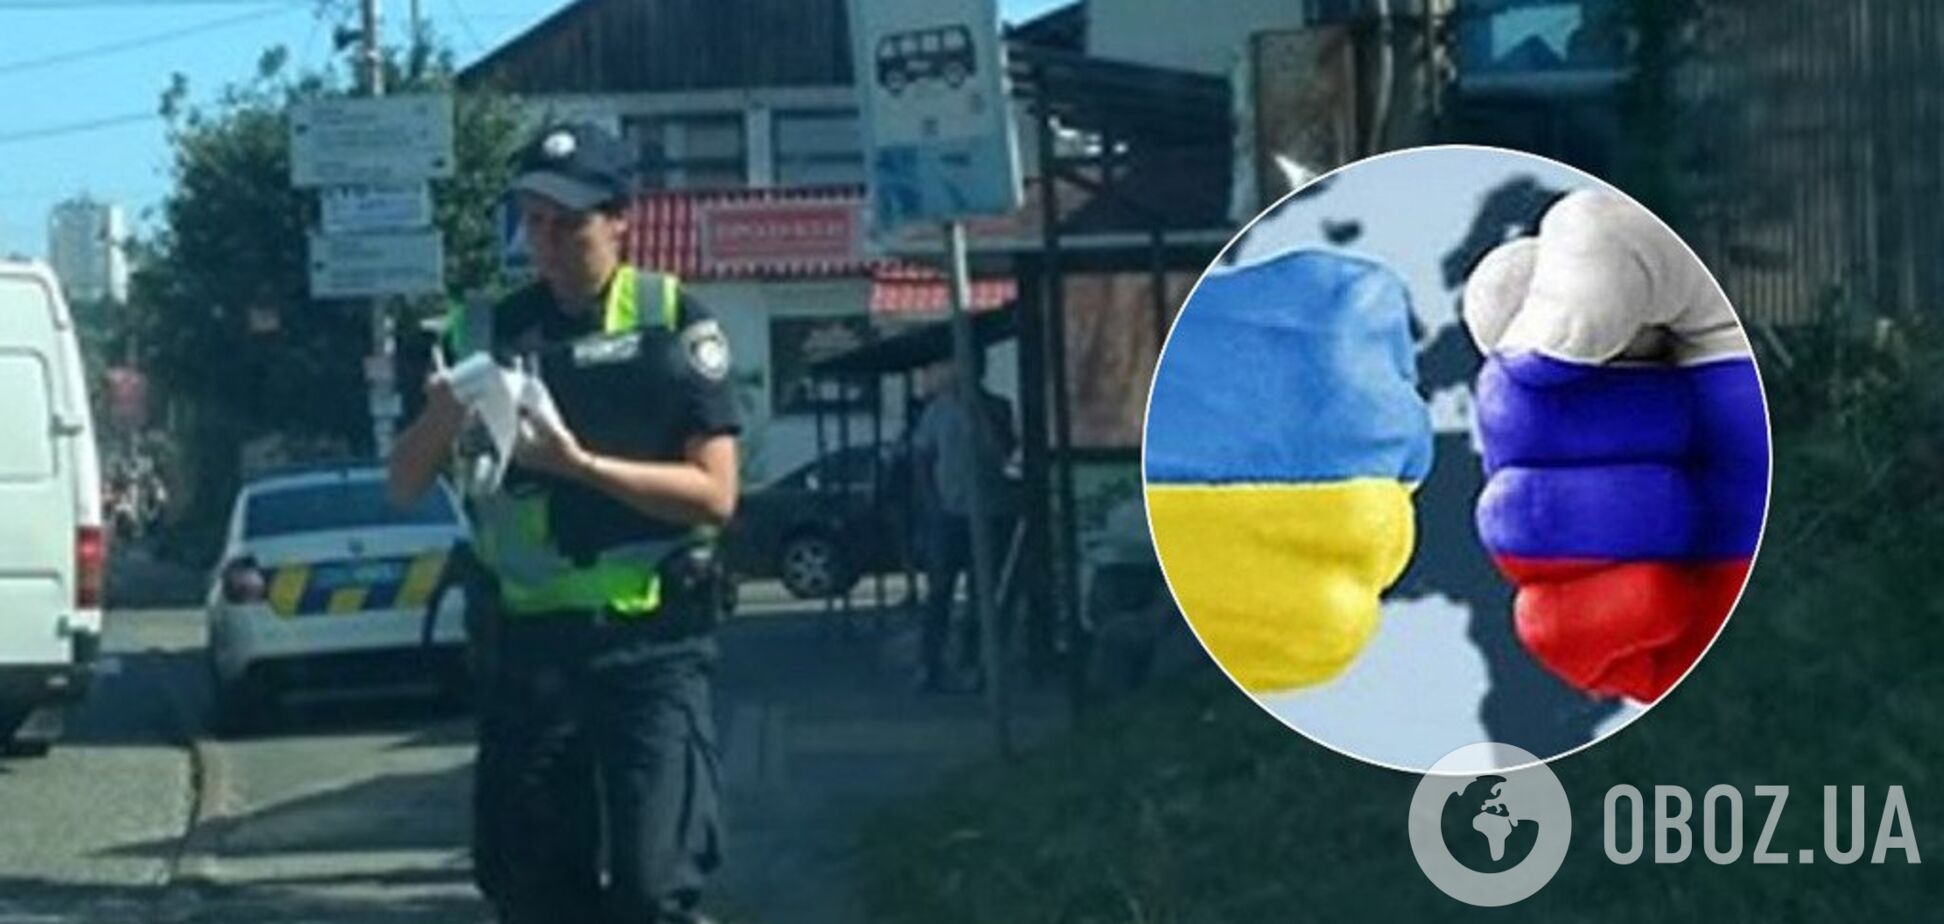 Штраф за украинский язык: под Киевом разгорелся громкий скандал с копом